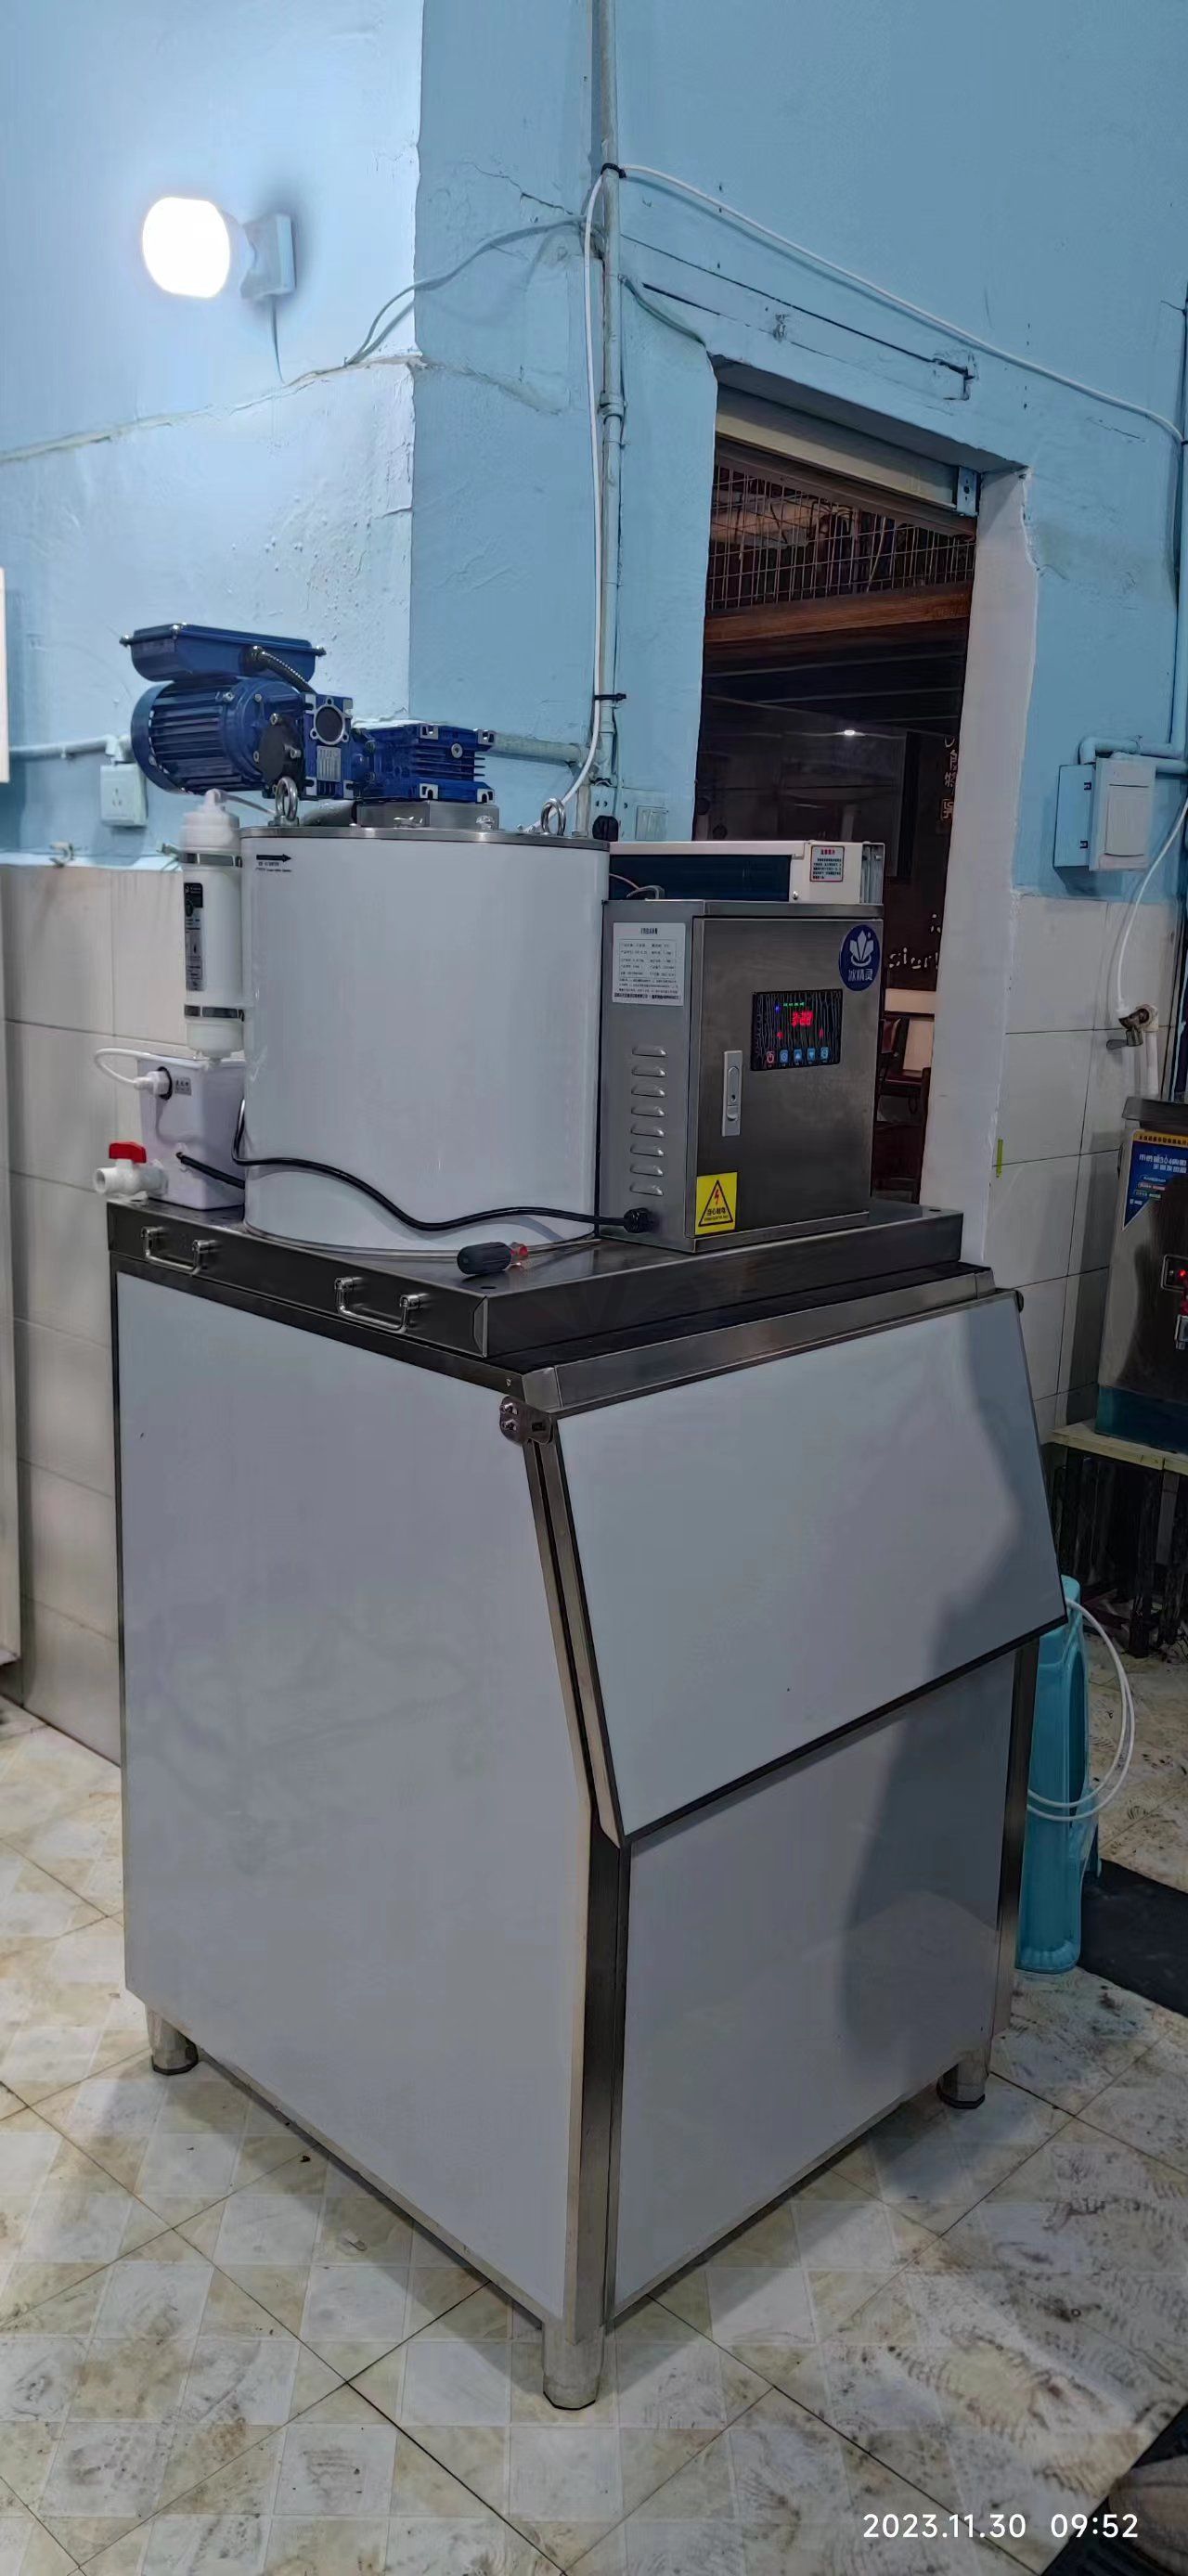 200公斤片冰机已交付四川宜宾《古街火锅》